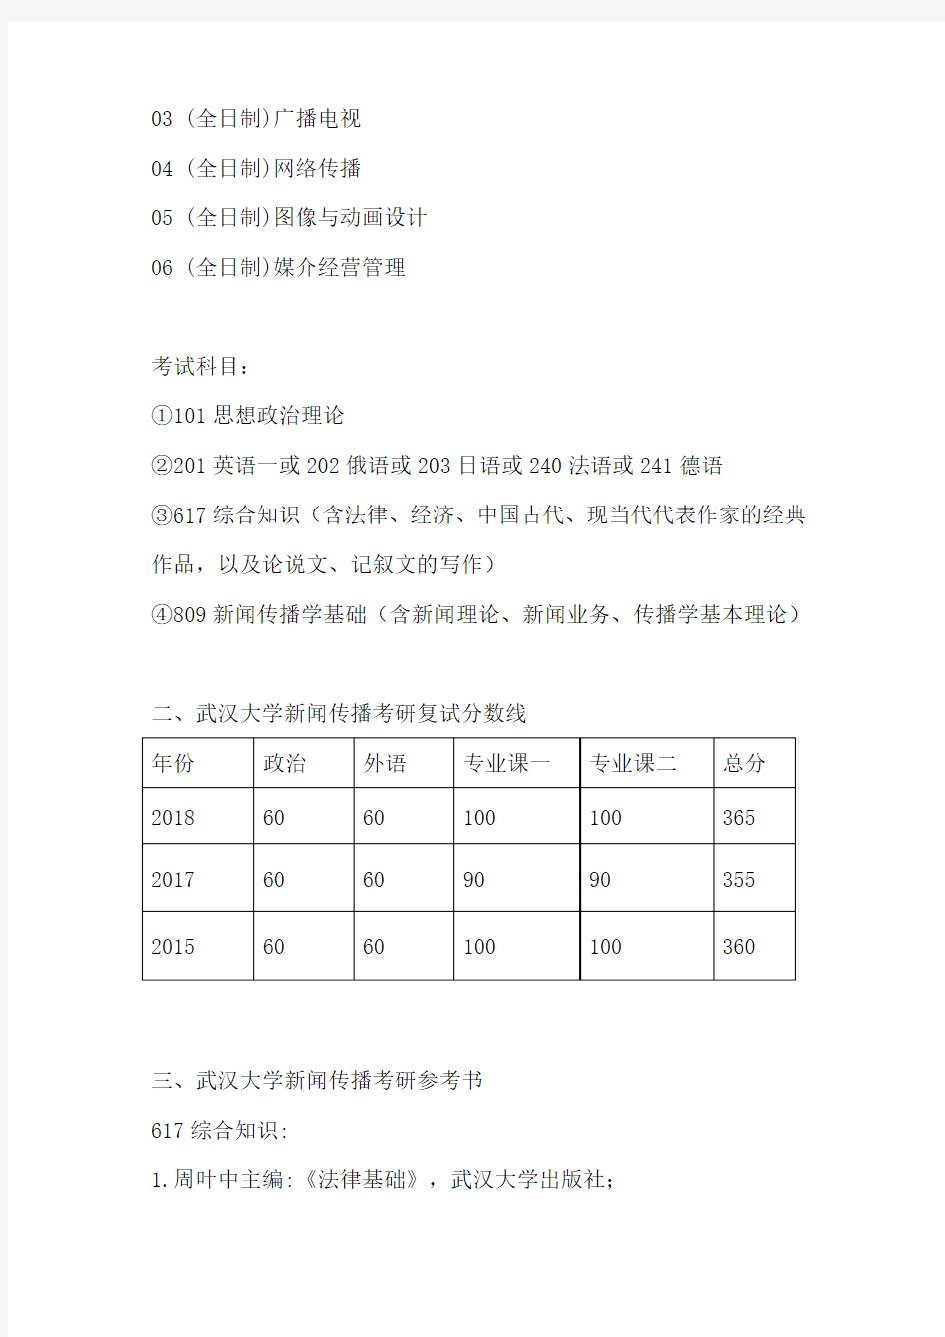 【初试】2020武汉大学新闻学、传播学考研考试科目、招生人数、参考书目、复试分数线